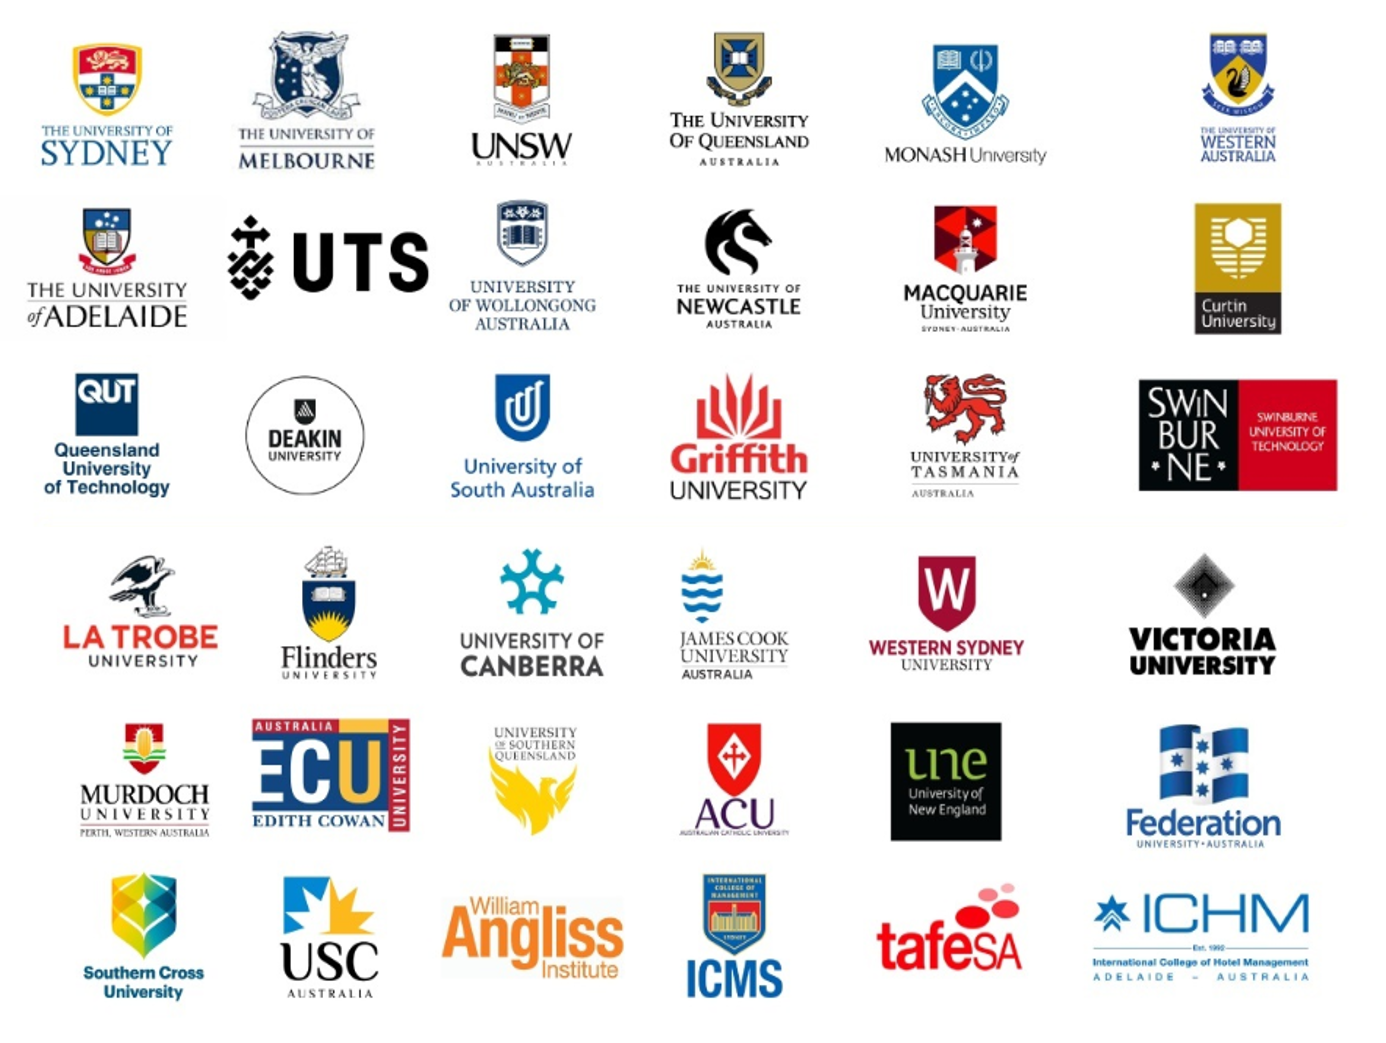 Top universities in Australia